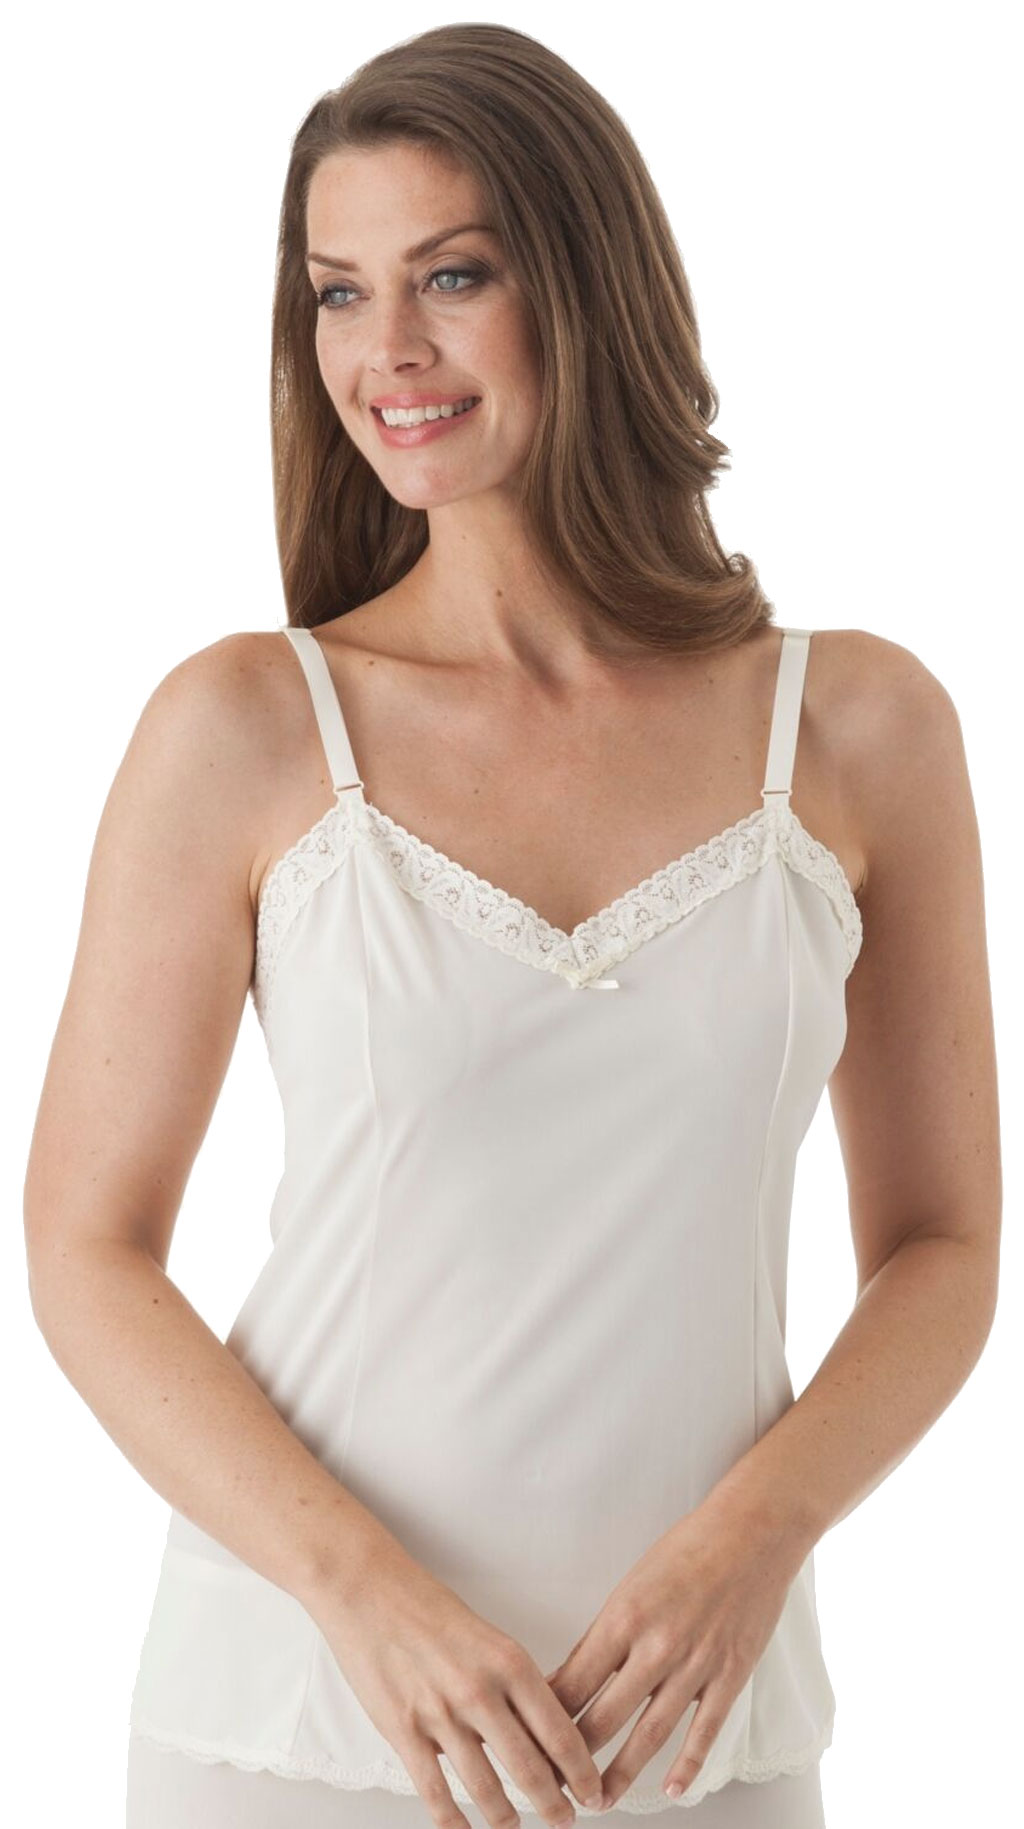 Ladies  Camisole Top Adjustable Straps Cling Resist Lace Trim Black Sizes 12-26 